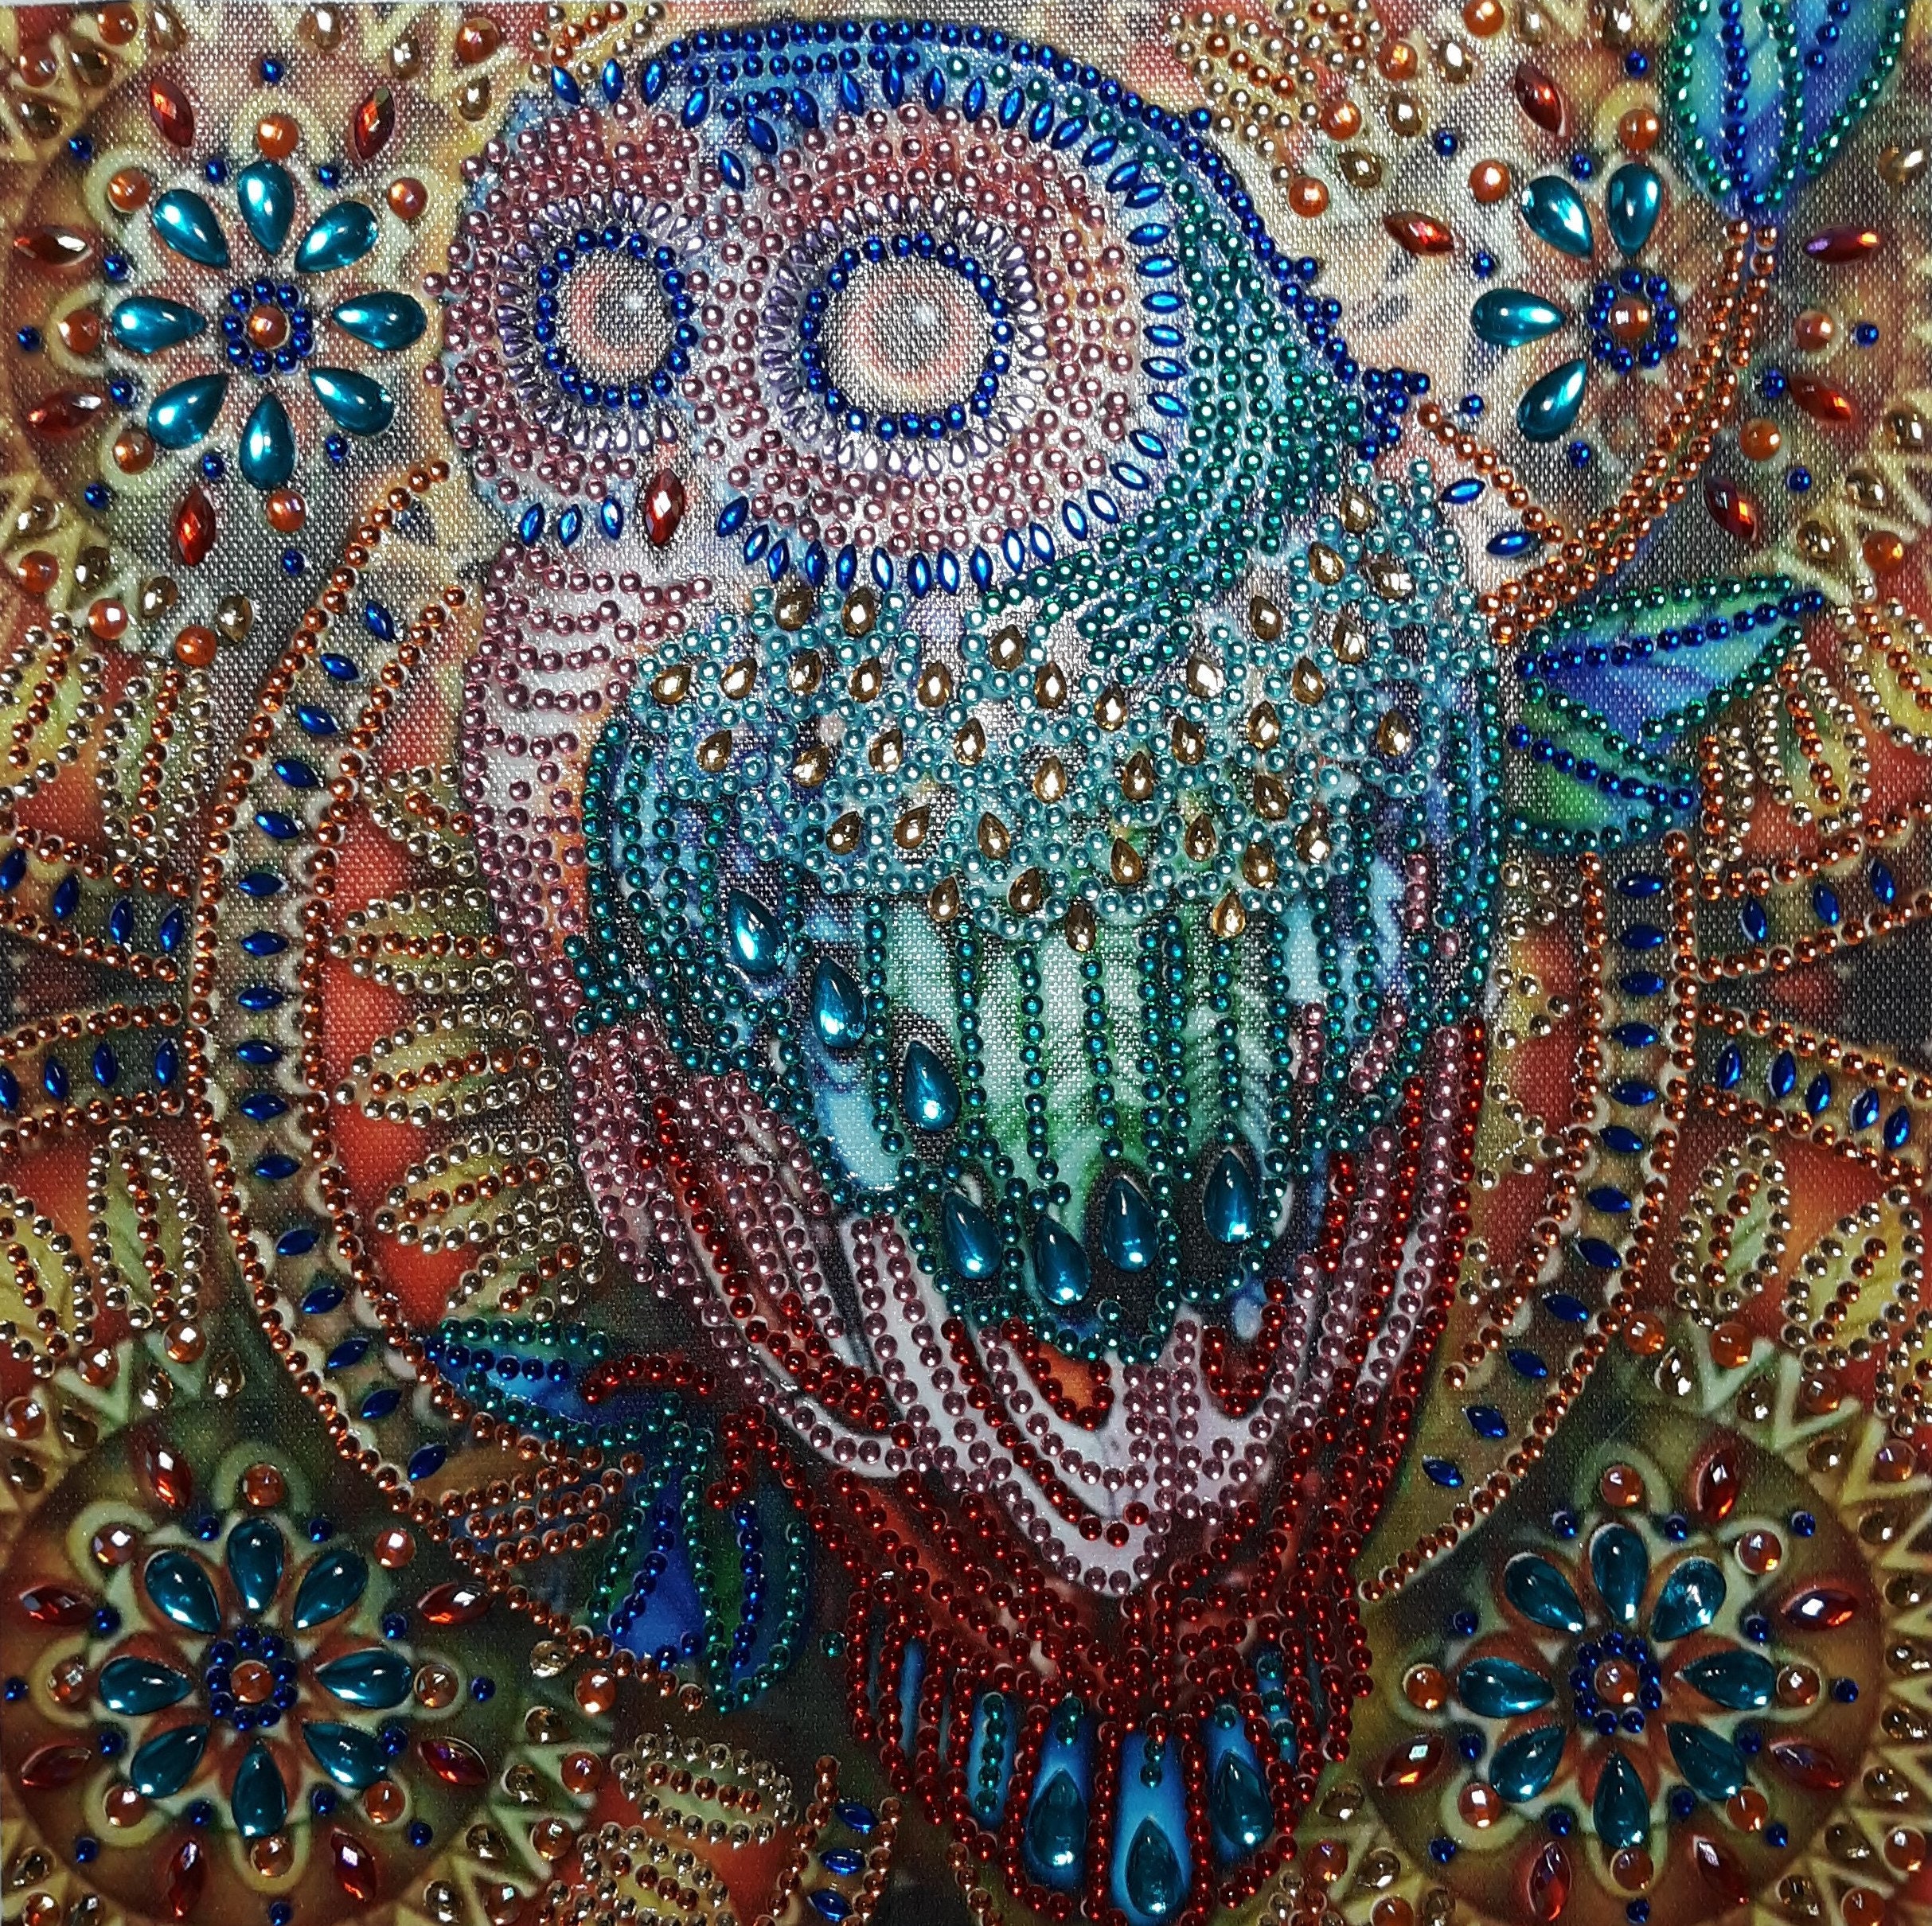 5d Diy Diamond Painting mandala Owl Diamond Painting